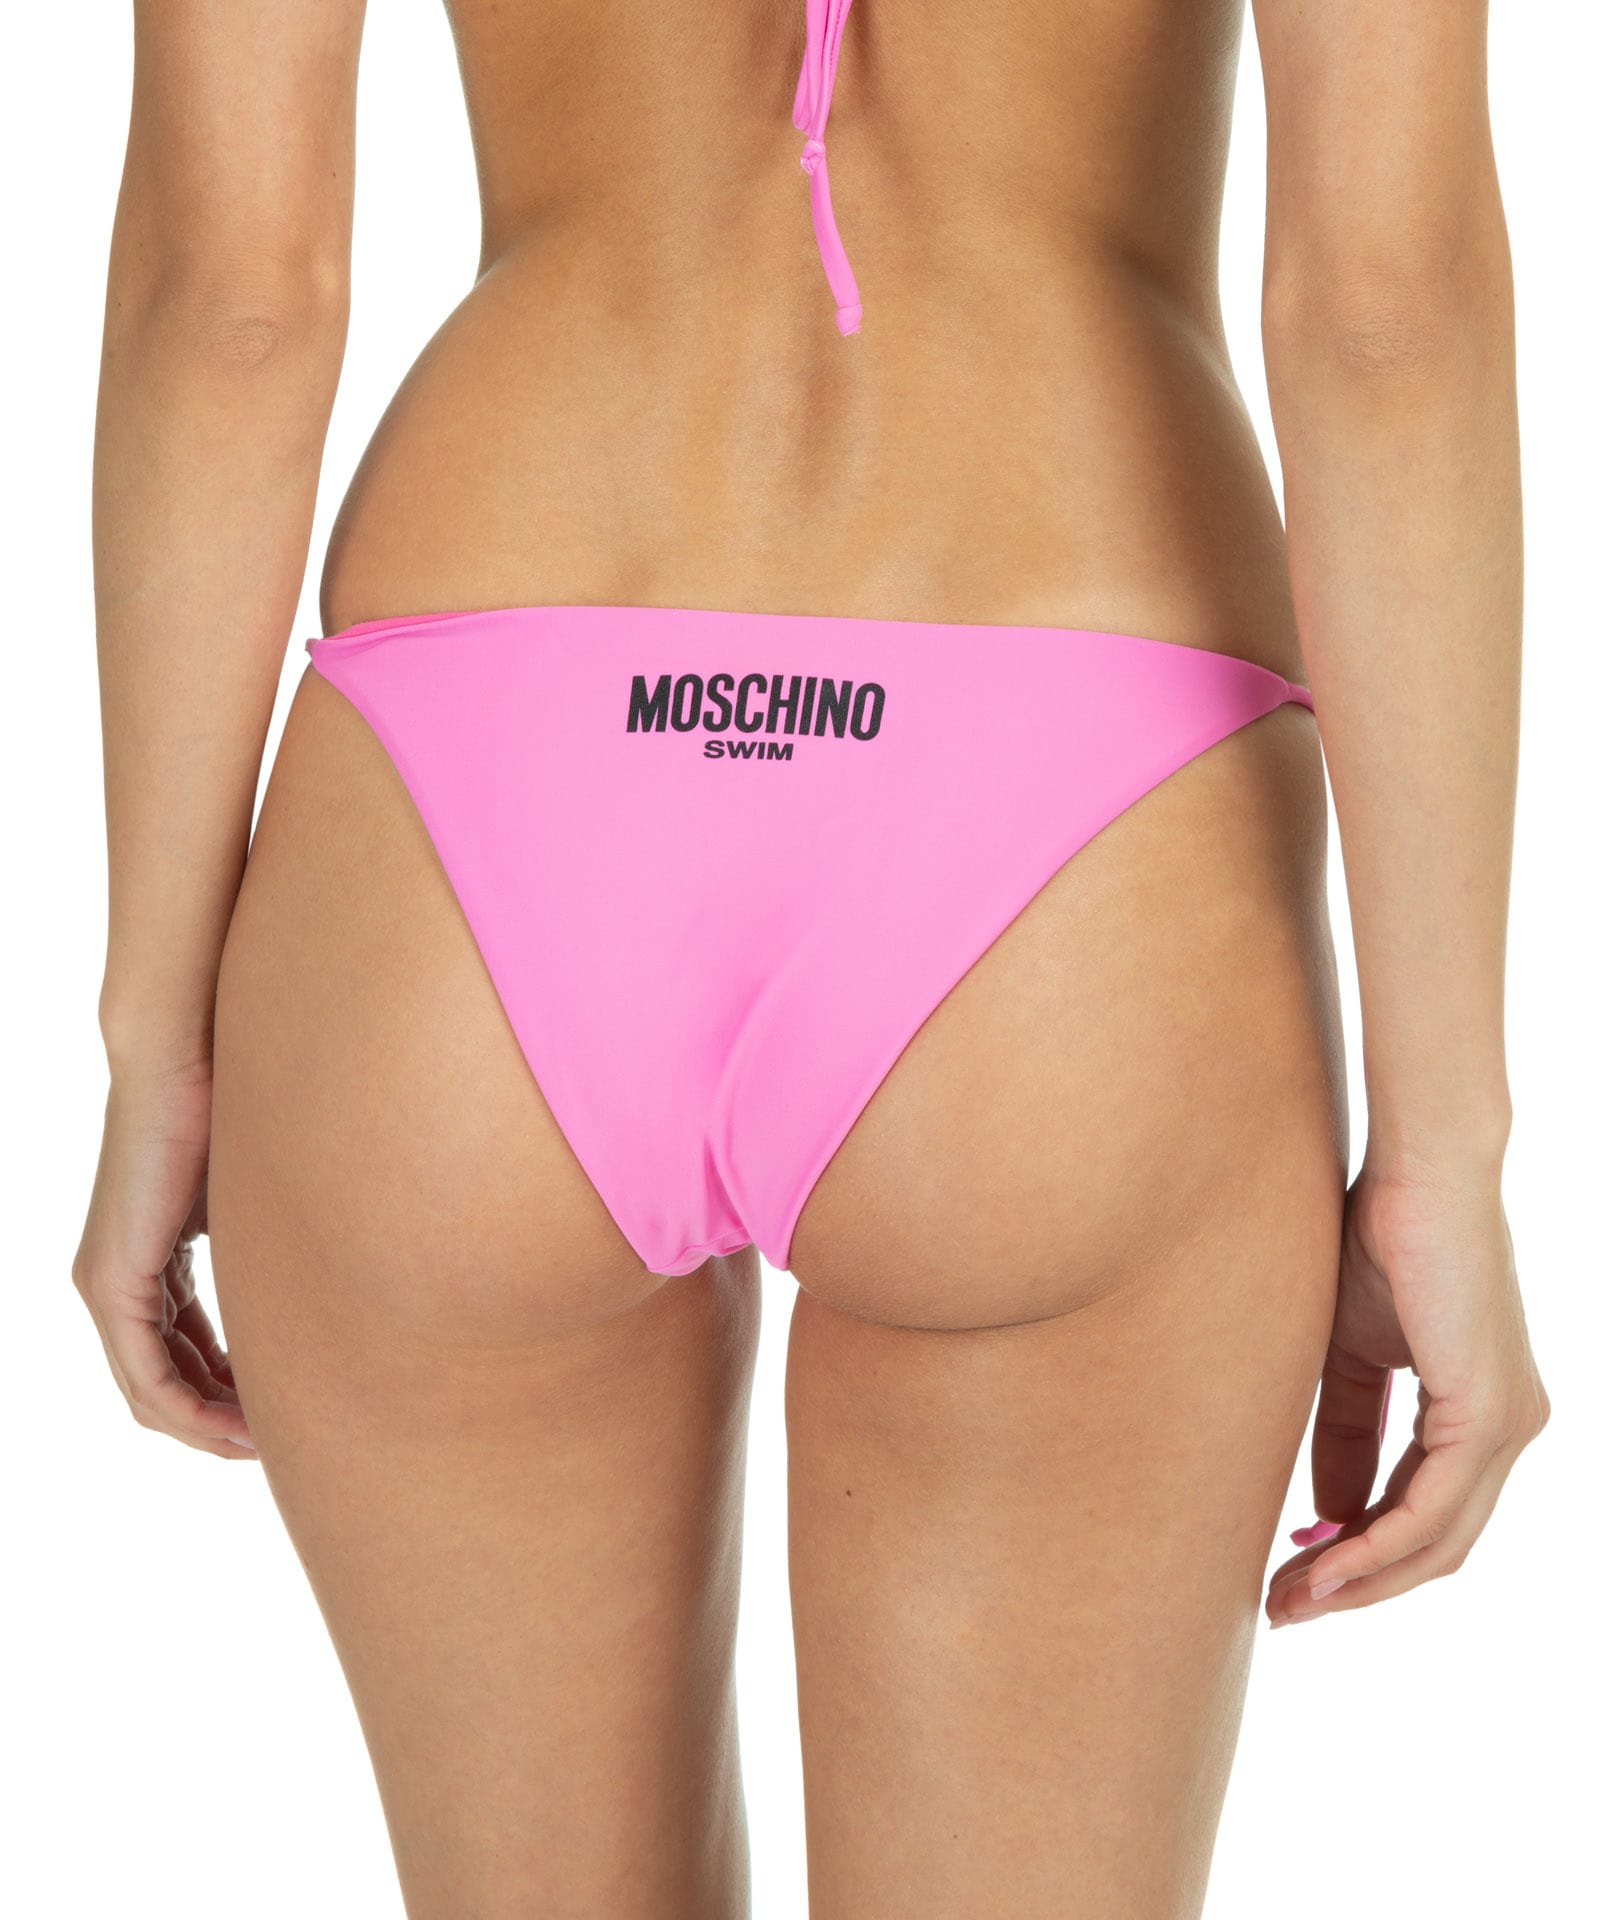 Moschino Bikini Bottoms